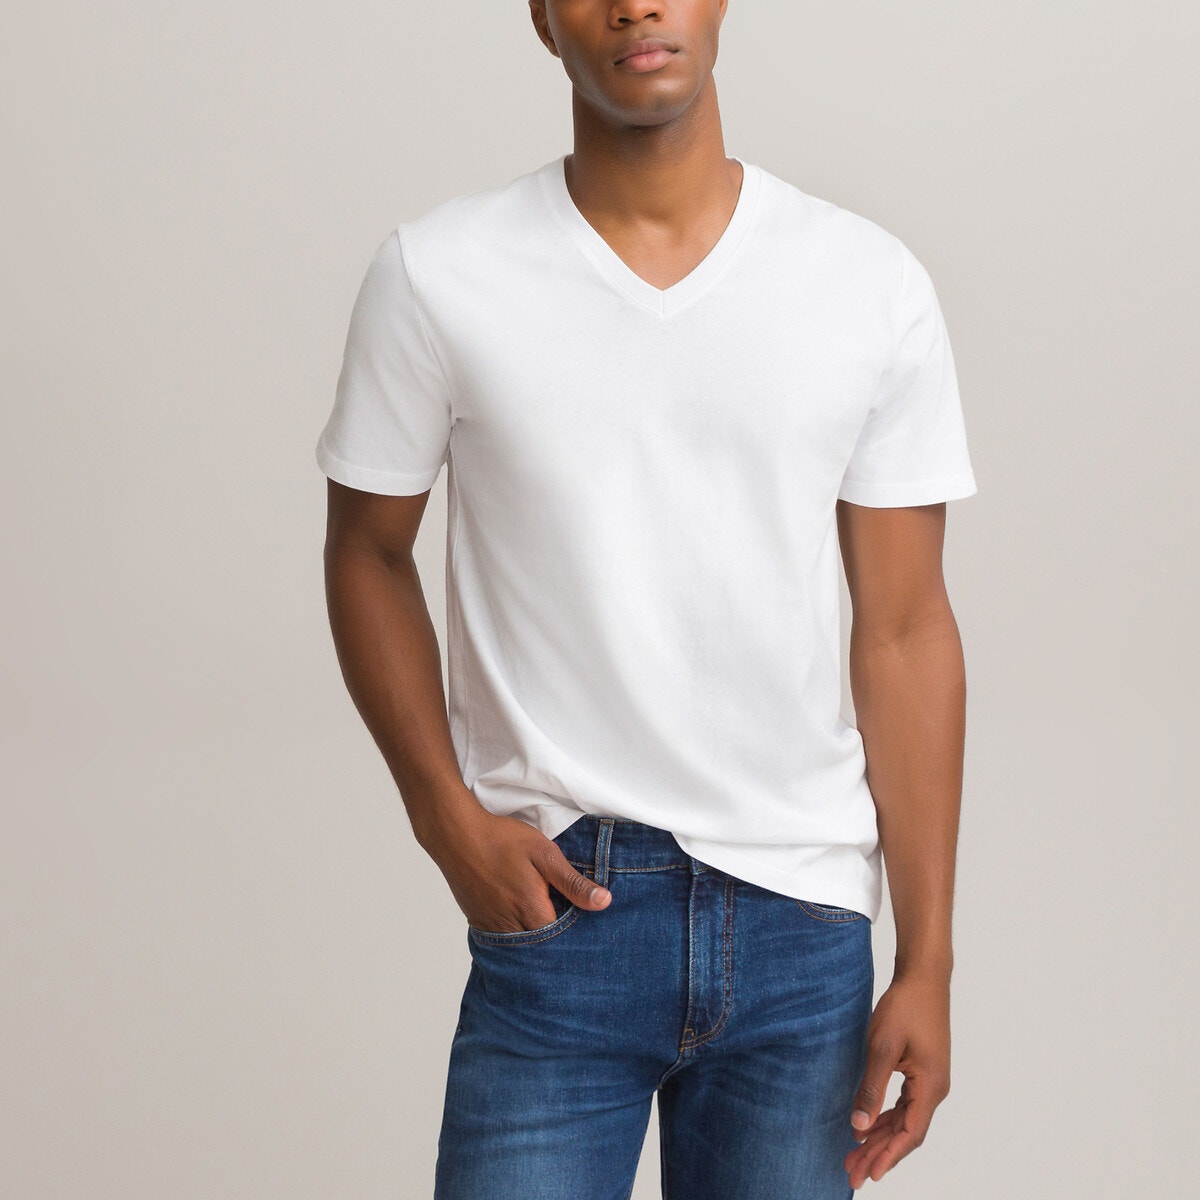 ΑΝΔΡΑΣ | Μπλούζες & Πουκάμισα | T-shirts Κοντομάνικη μπλούζα με V από οργανικό βαμβάκι